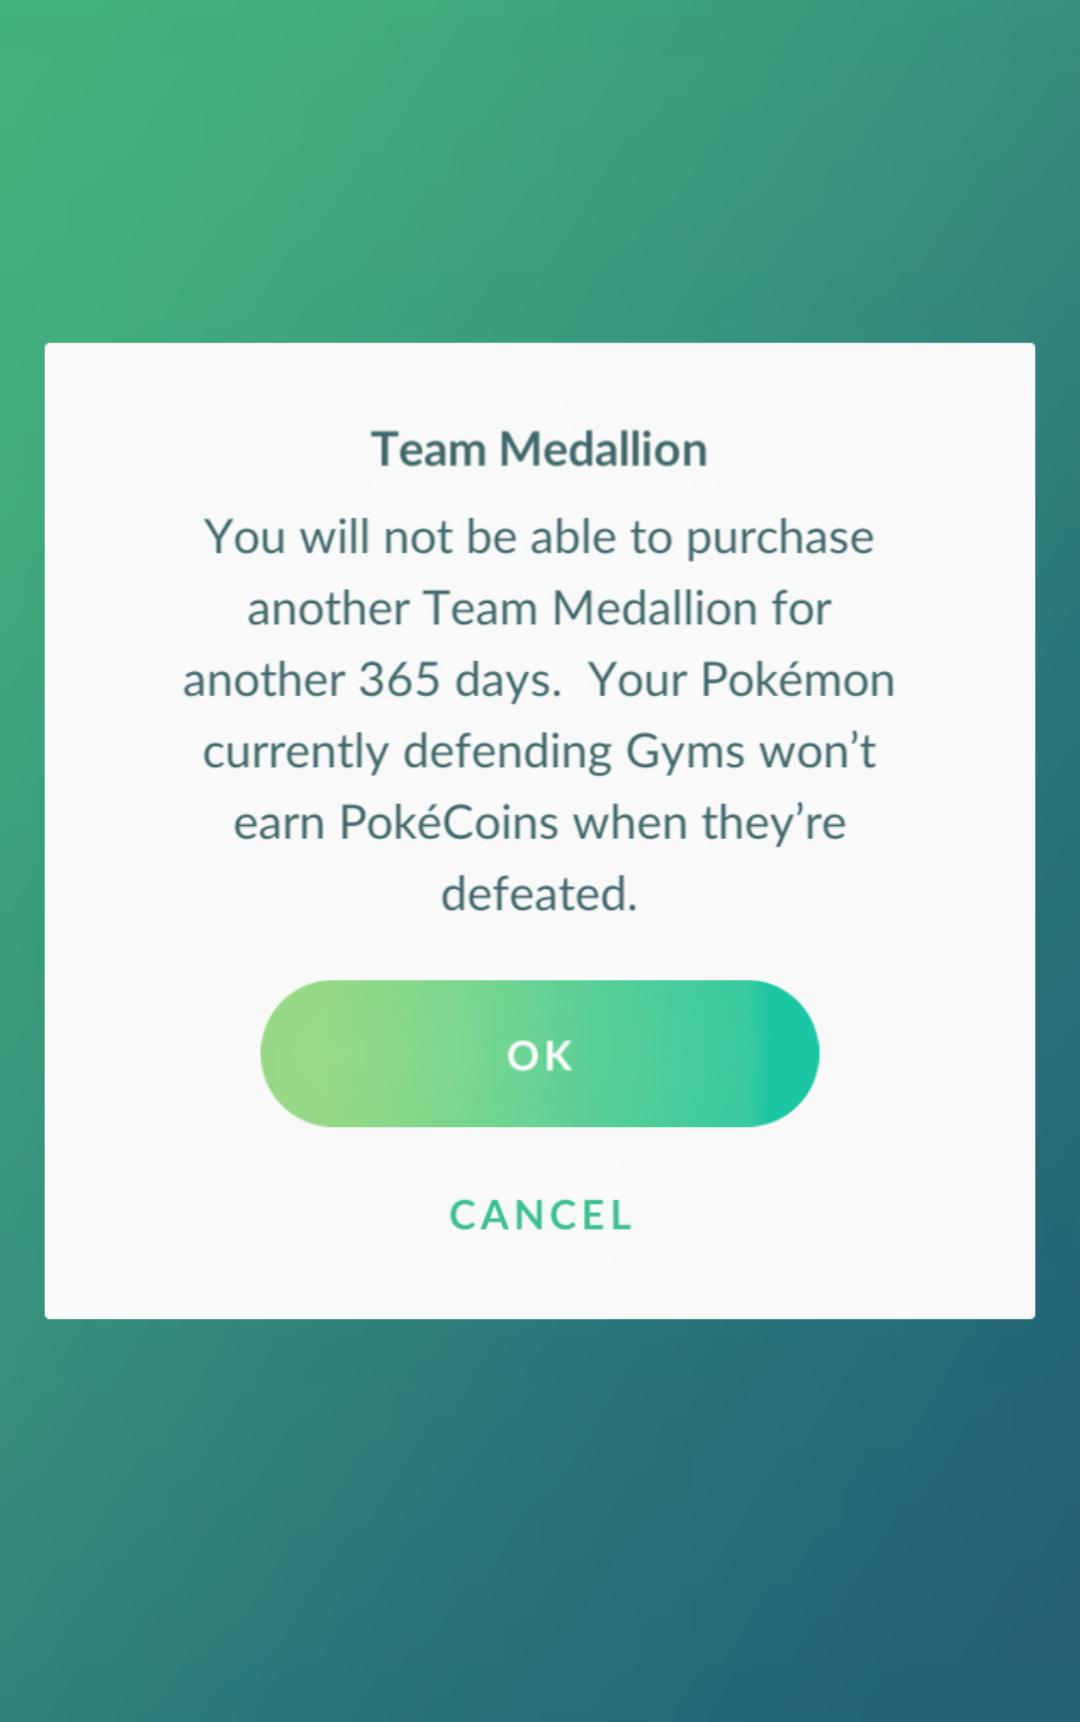 How to switch teams in Pokémon GO